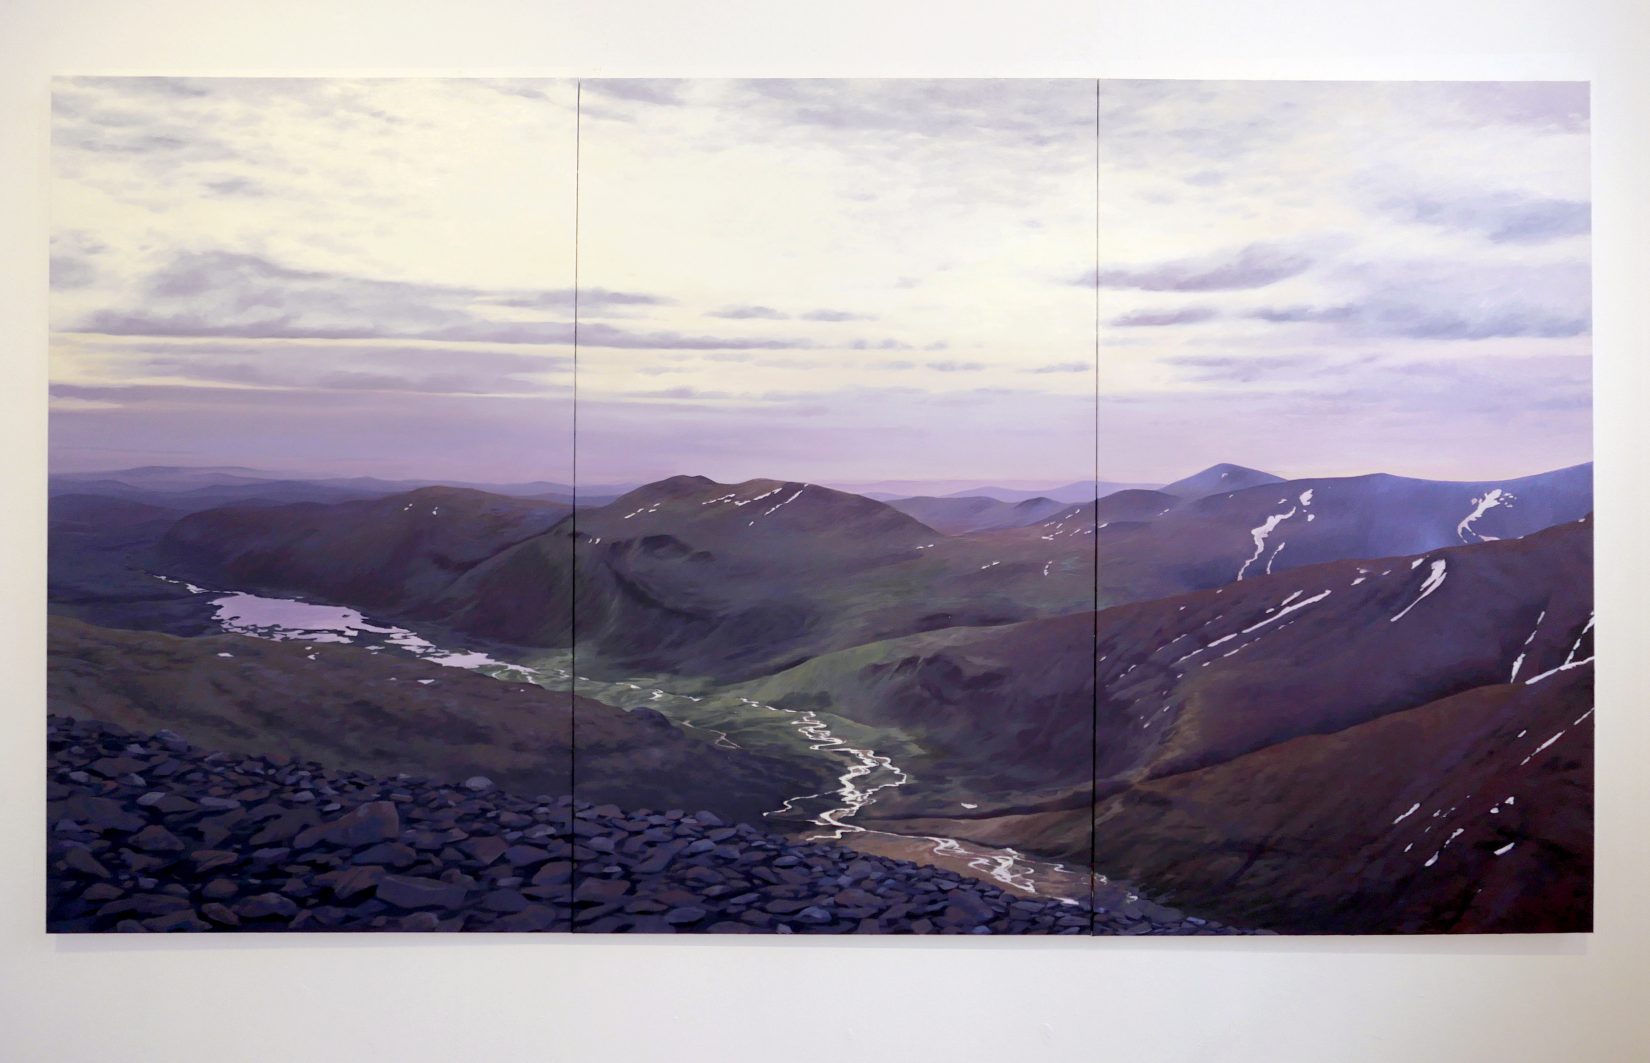 Målning av landskap med himmel, berg och en flod som rinner genom dalen.